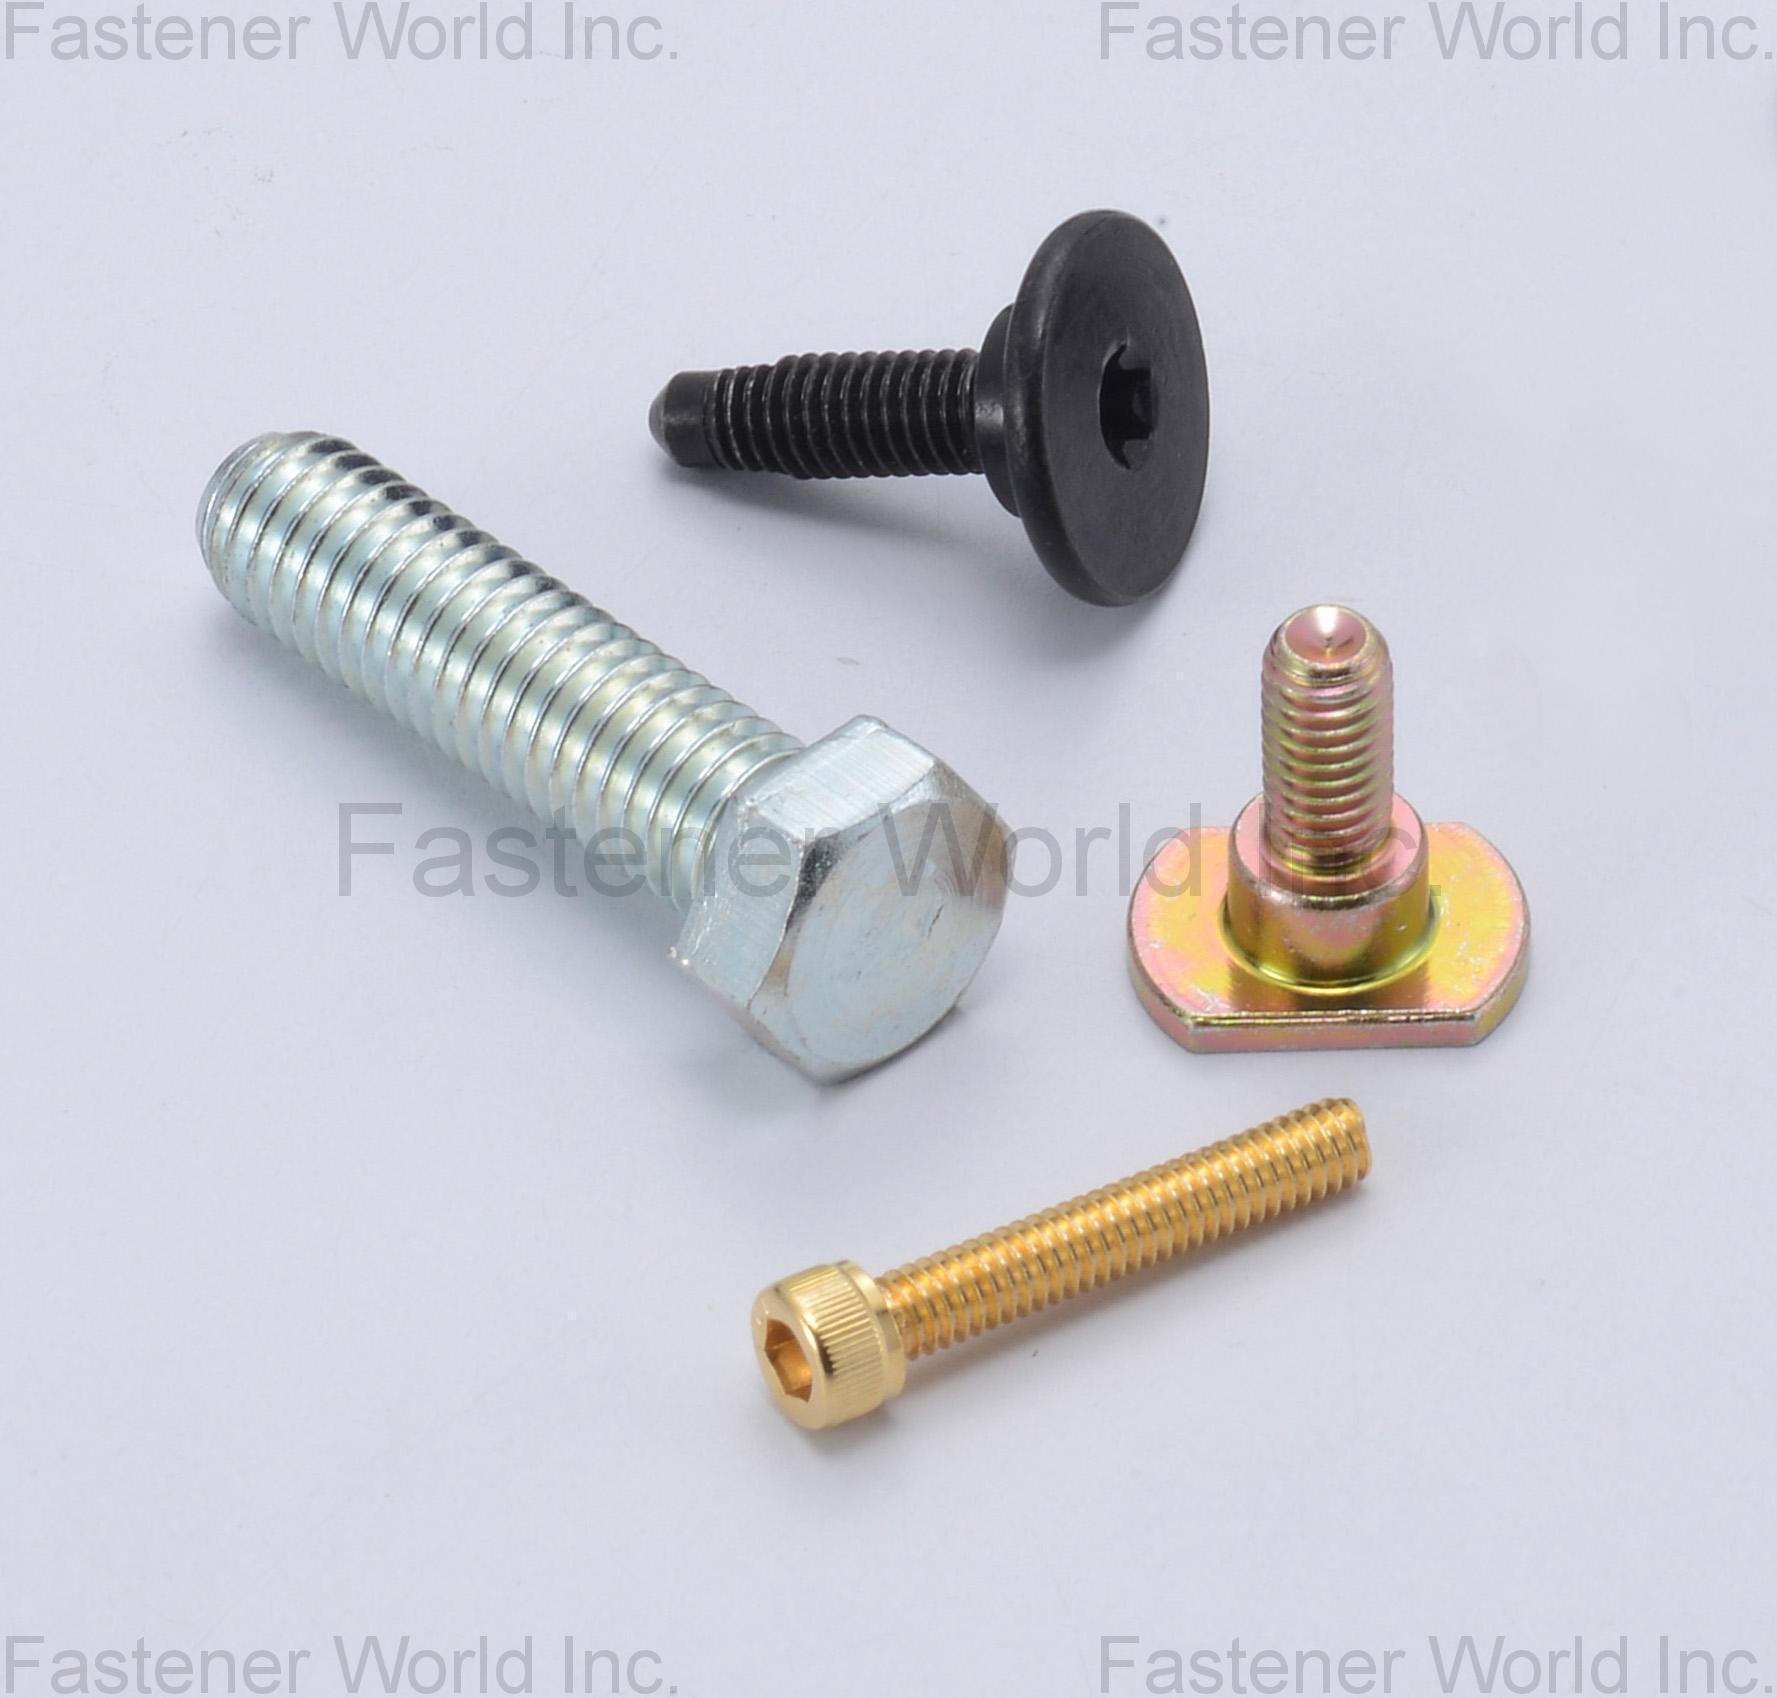 豪威爾螺絲工業有限公司 , 特殊螺絲,特殊螺栓,SEMS組合螺絲,不銹鋼螺絲,華司